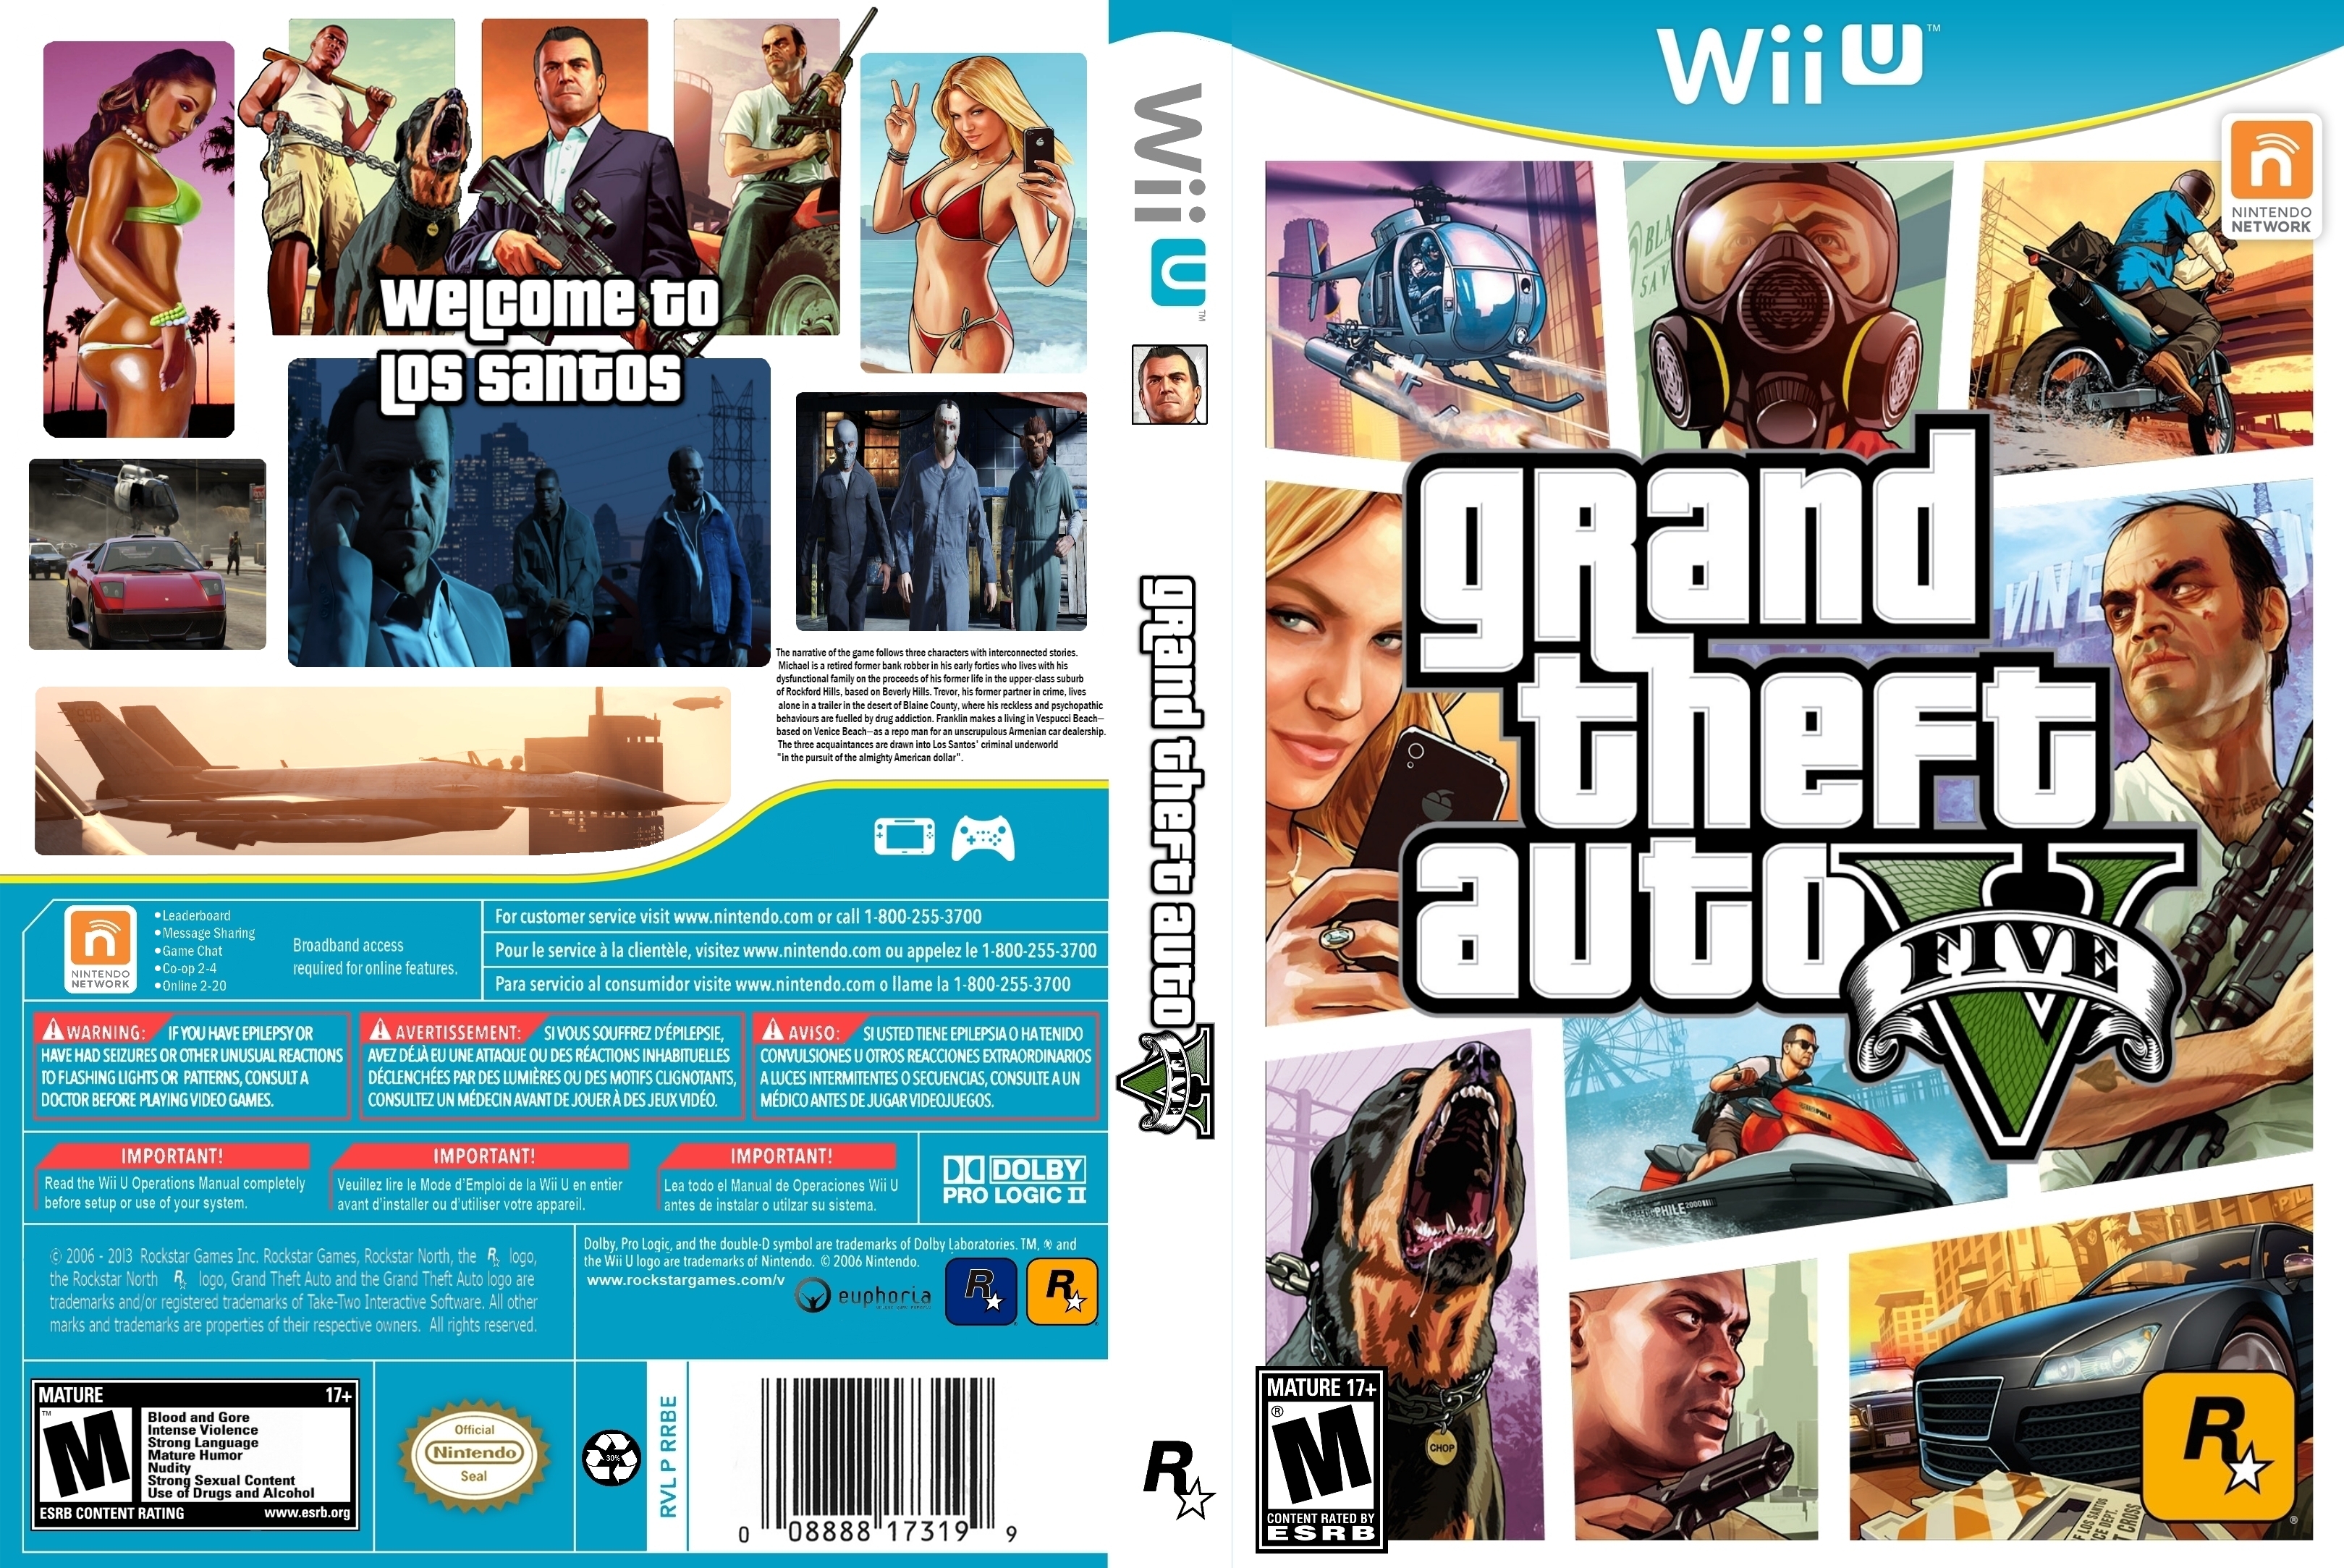 omvatten periodieke Voornaamwoord GTA 5 Wii U Cover Art by Sen-goku on DeviantArt